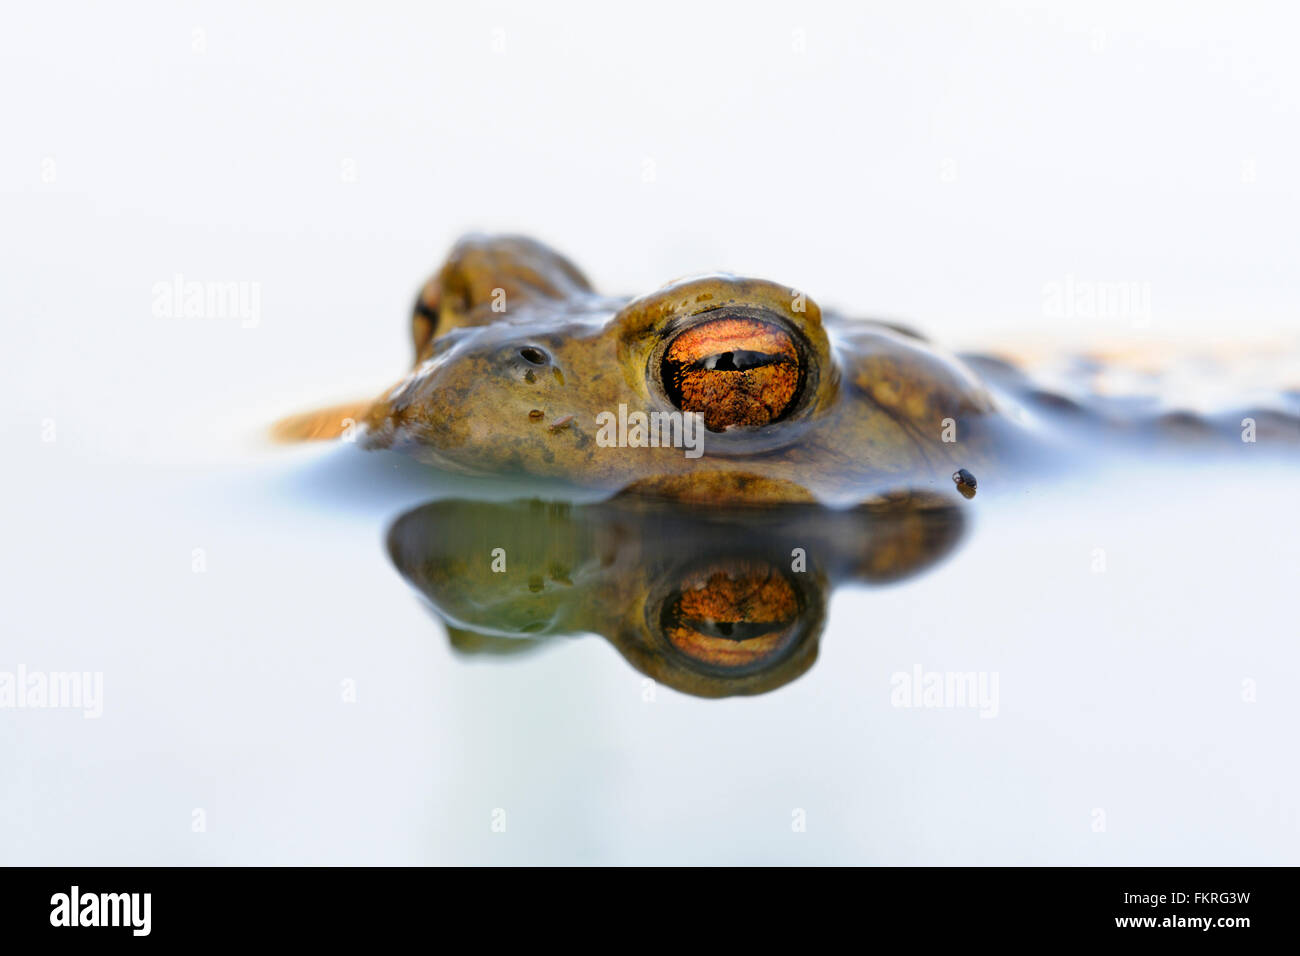 Il rospo comune / Erdkroete ( Bufo bufo ) durante la stagione riproduttiva, galleggia sul colore bianco della superficie dell'acqua; in attesa del suo compagno. Foto Stock